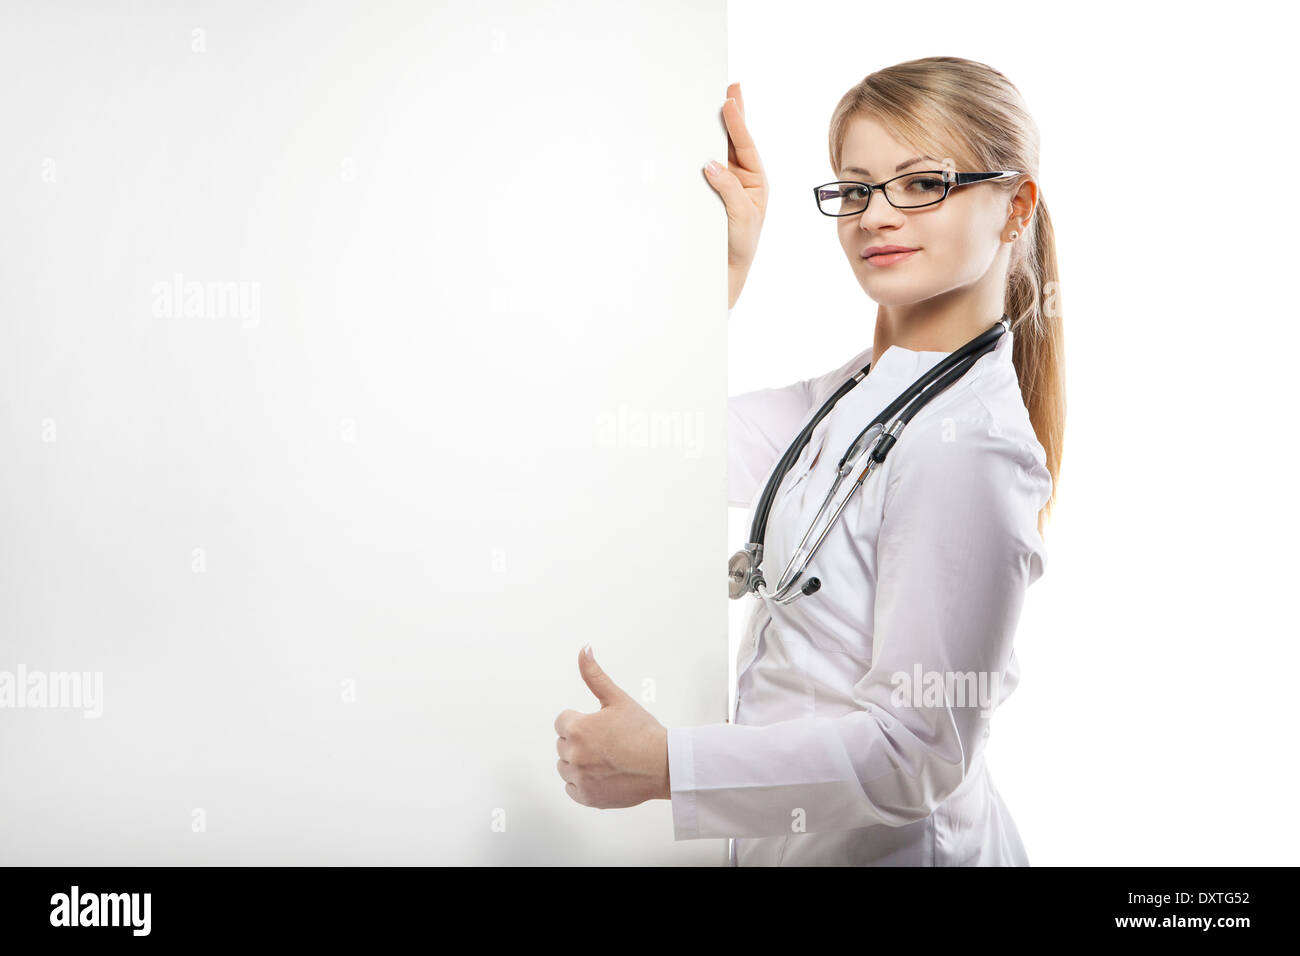 Carte médicale médecin santé bannière gens personne sourire féminin soins médecine signe heureux isolé poster board vierge billboard Banque D'Images